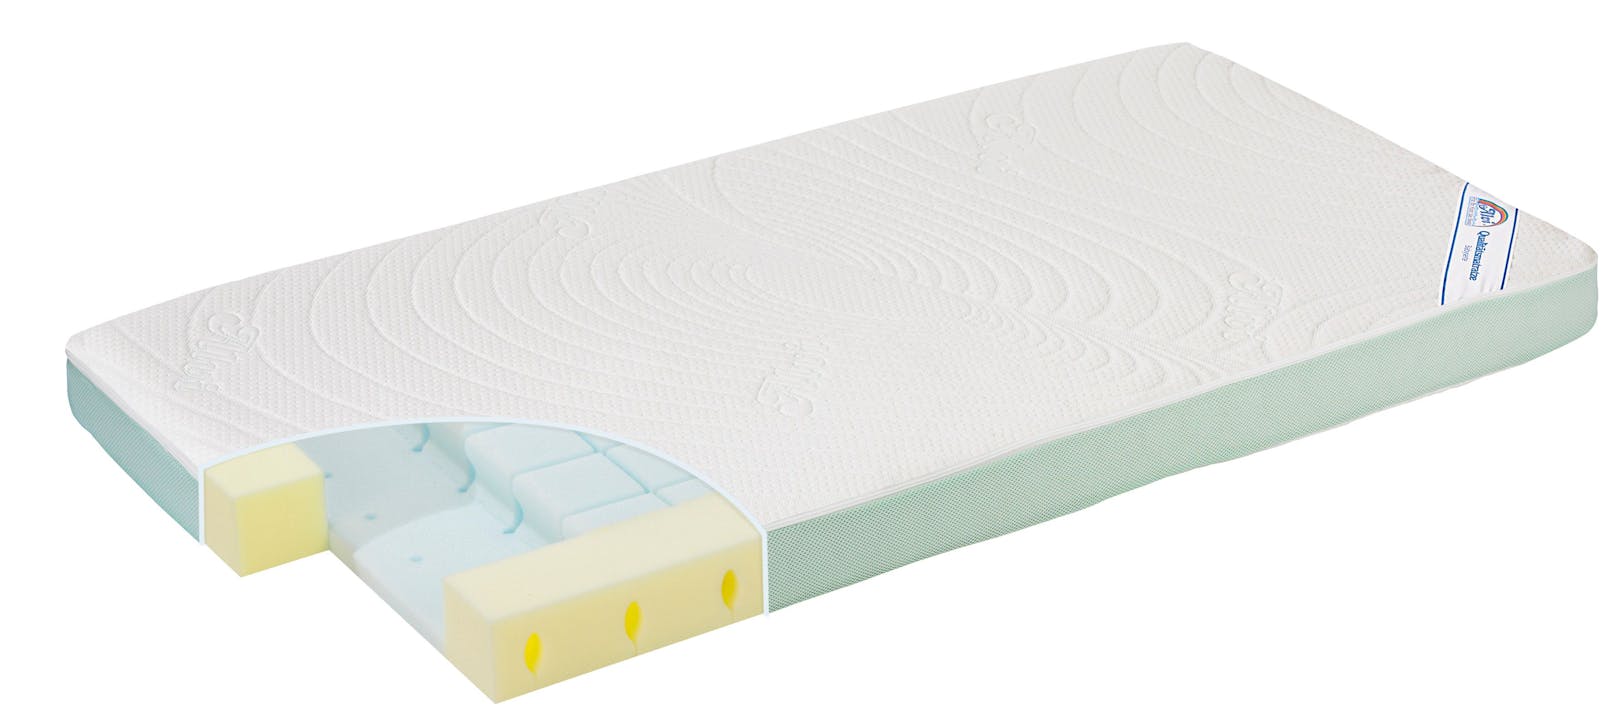 Die Matratze ist für Babys und Kleinkinder geeignet.